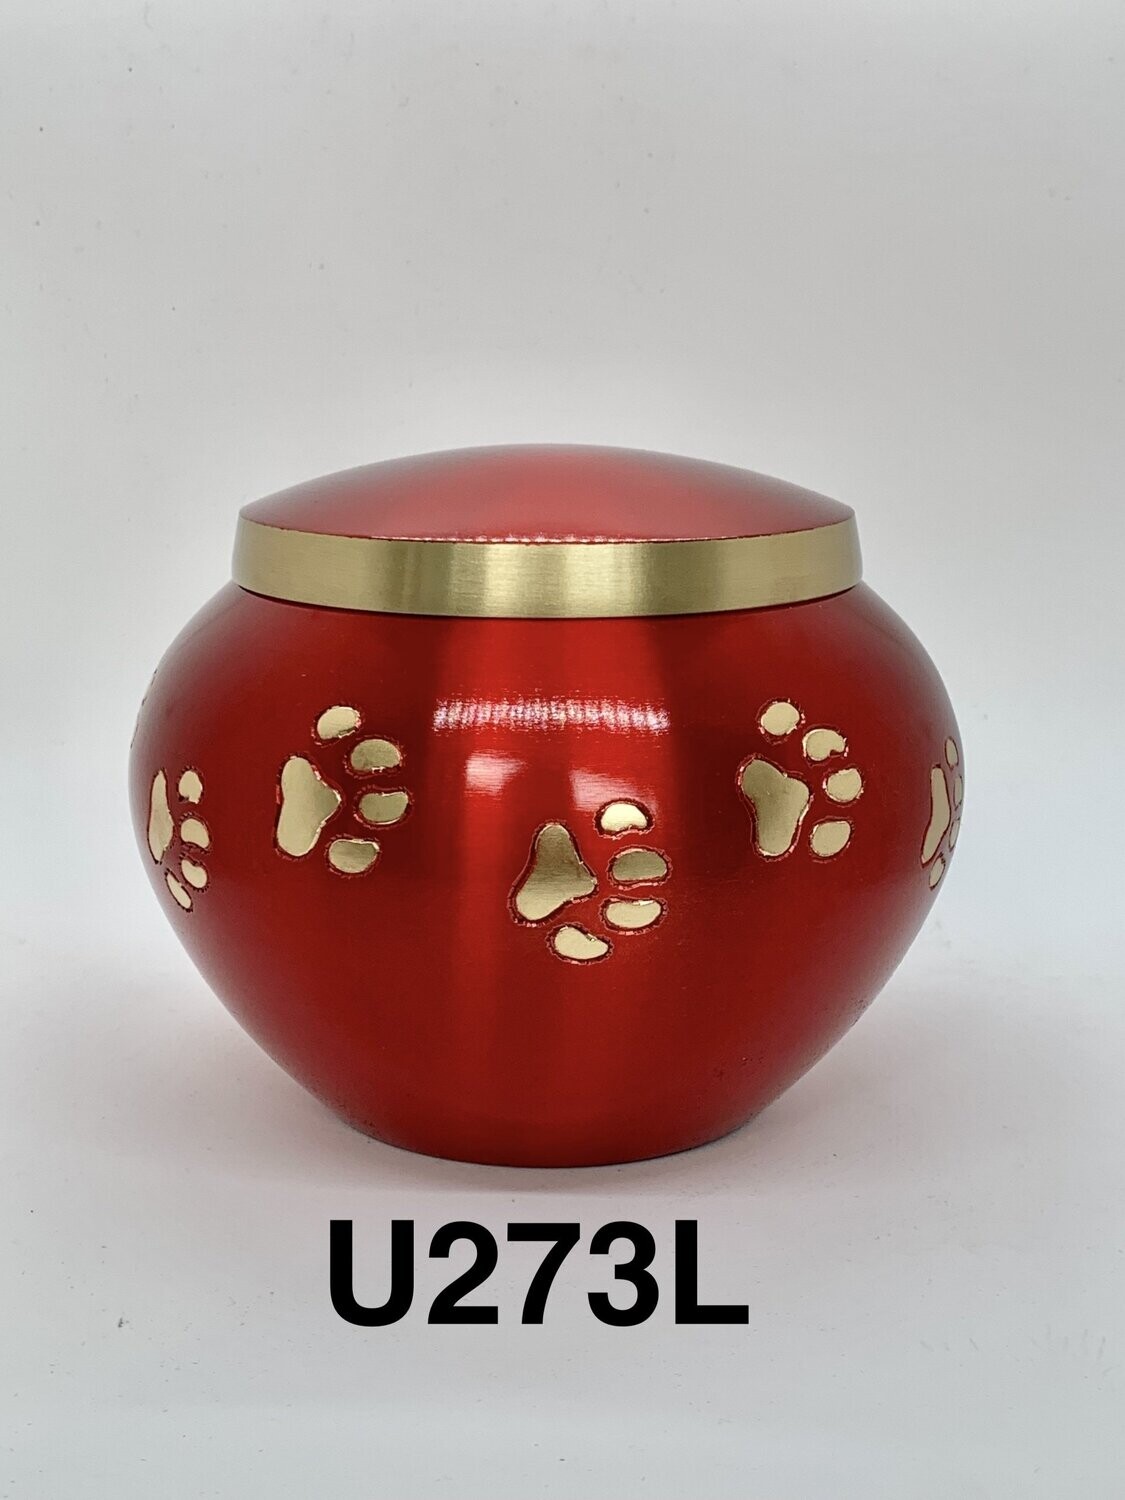 U273L